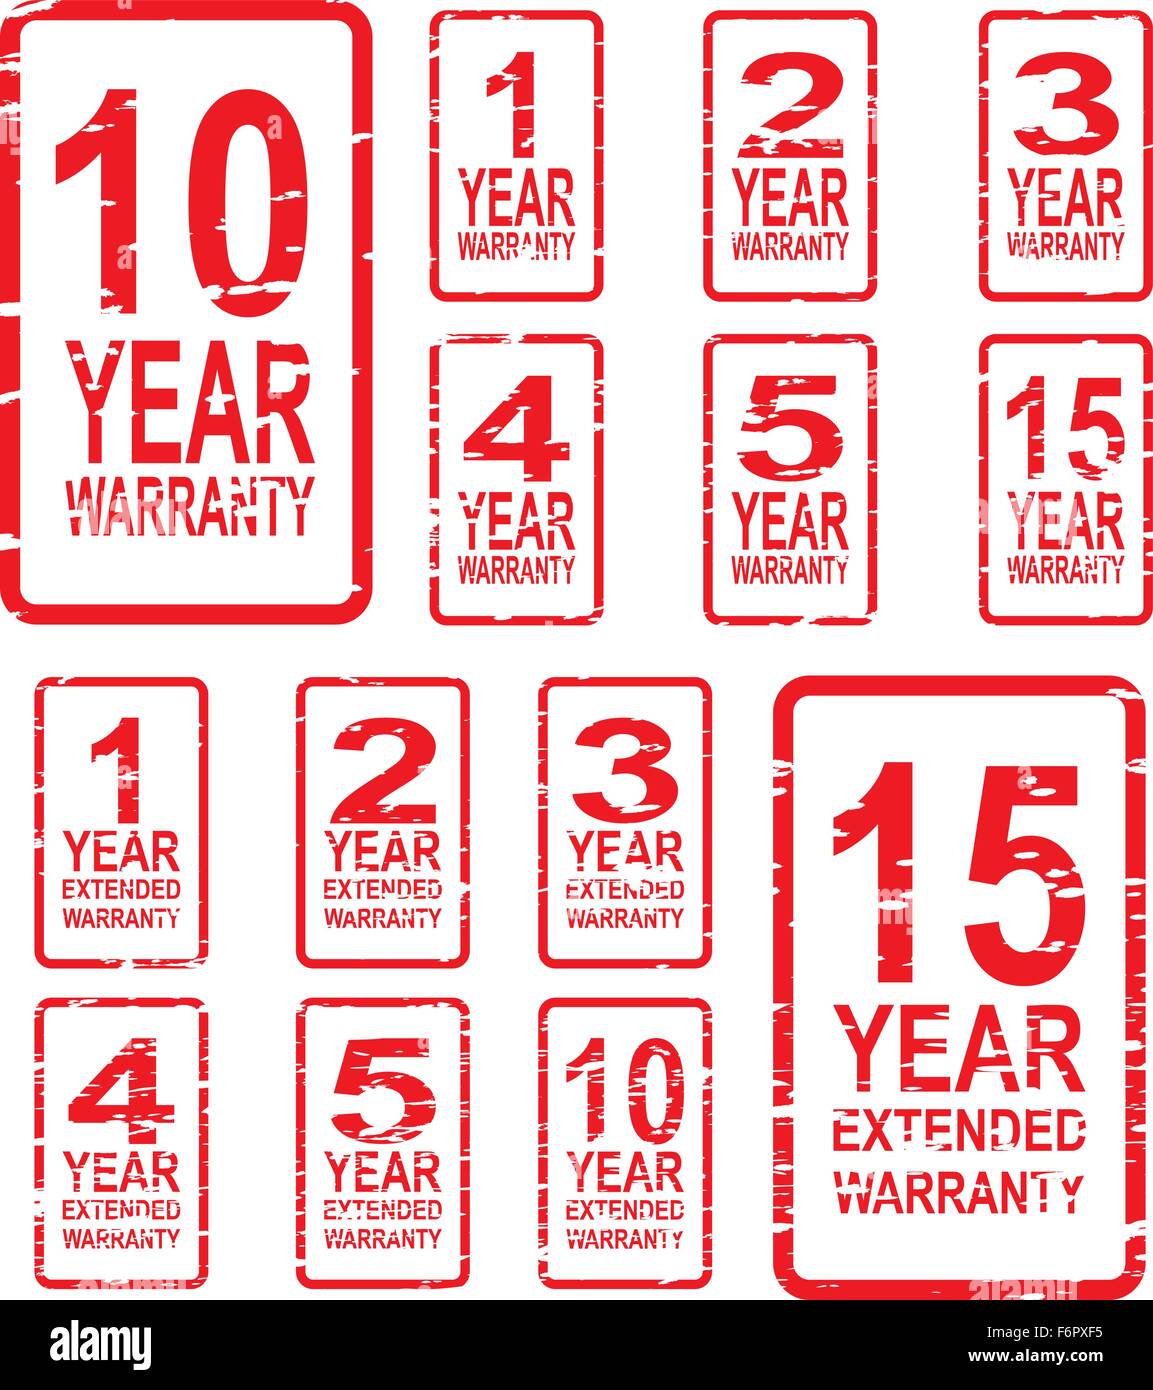 Roter Stempel Vektor für Garantie-Konzept, inklusive 1, 2, 3, 4, 5, 10 und 15 Jahre erweiterte Garantie Stock Vektor